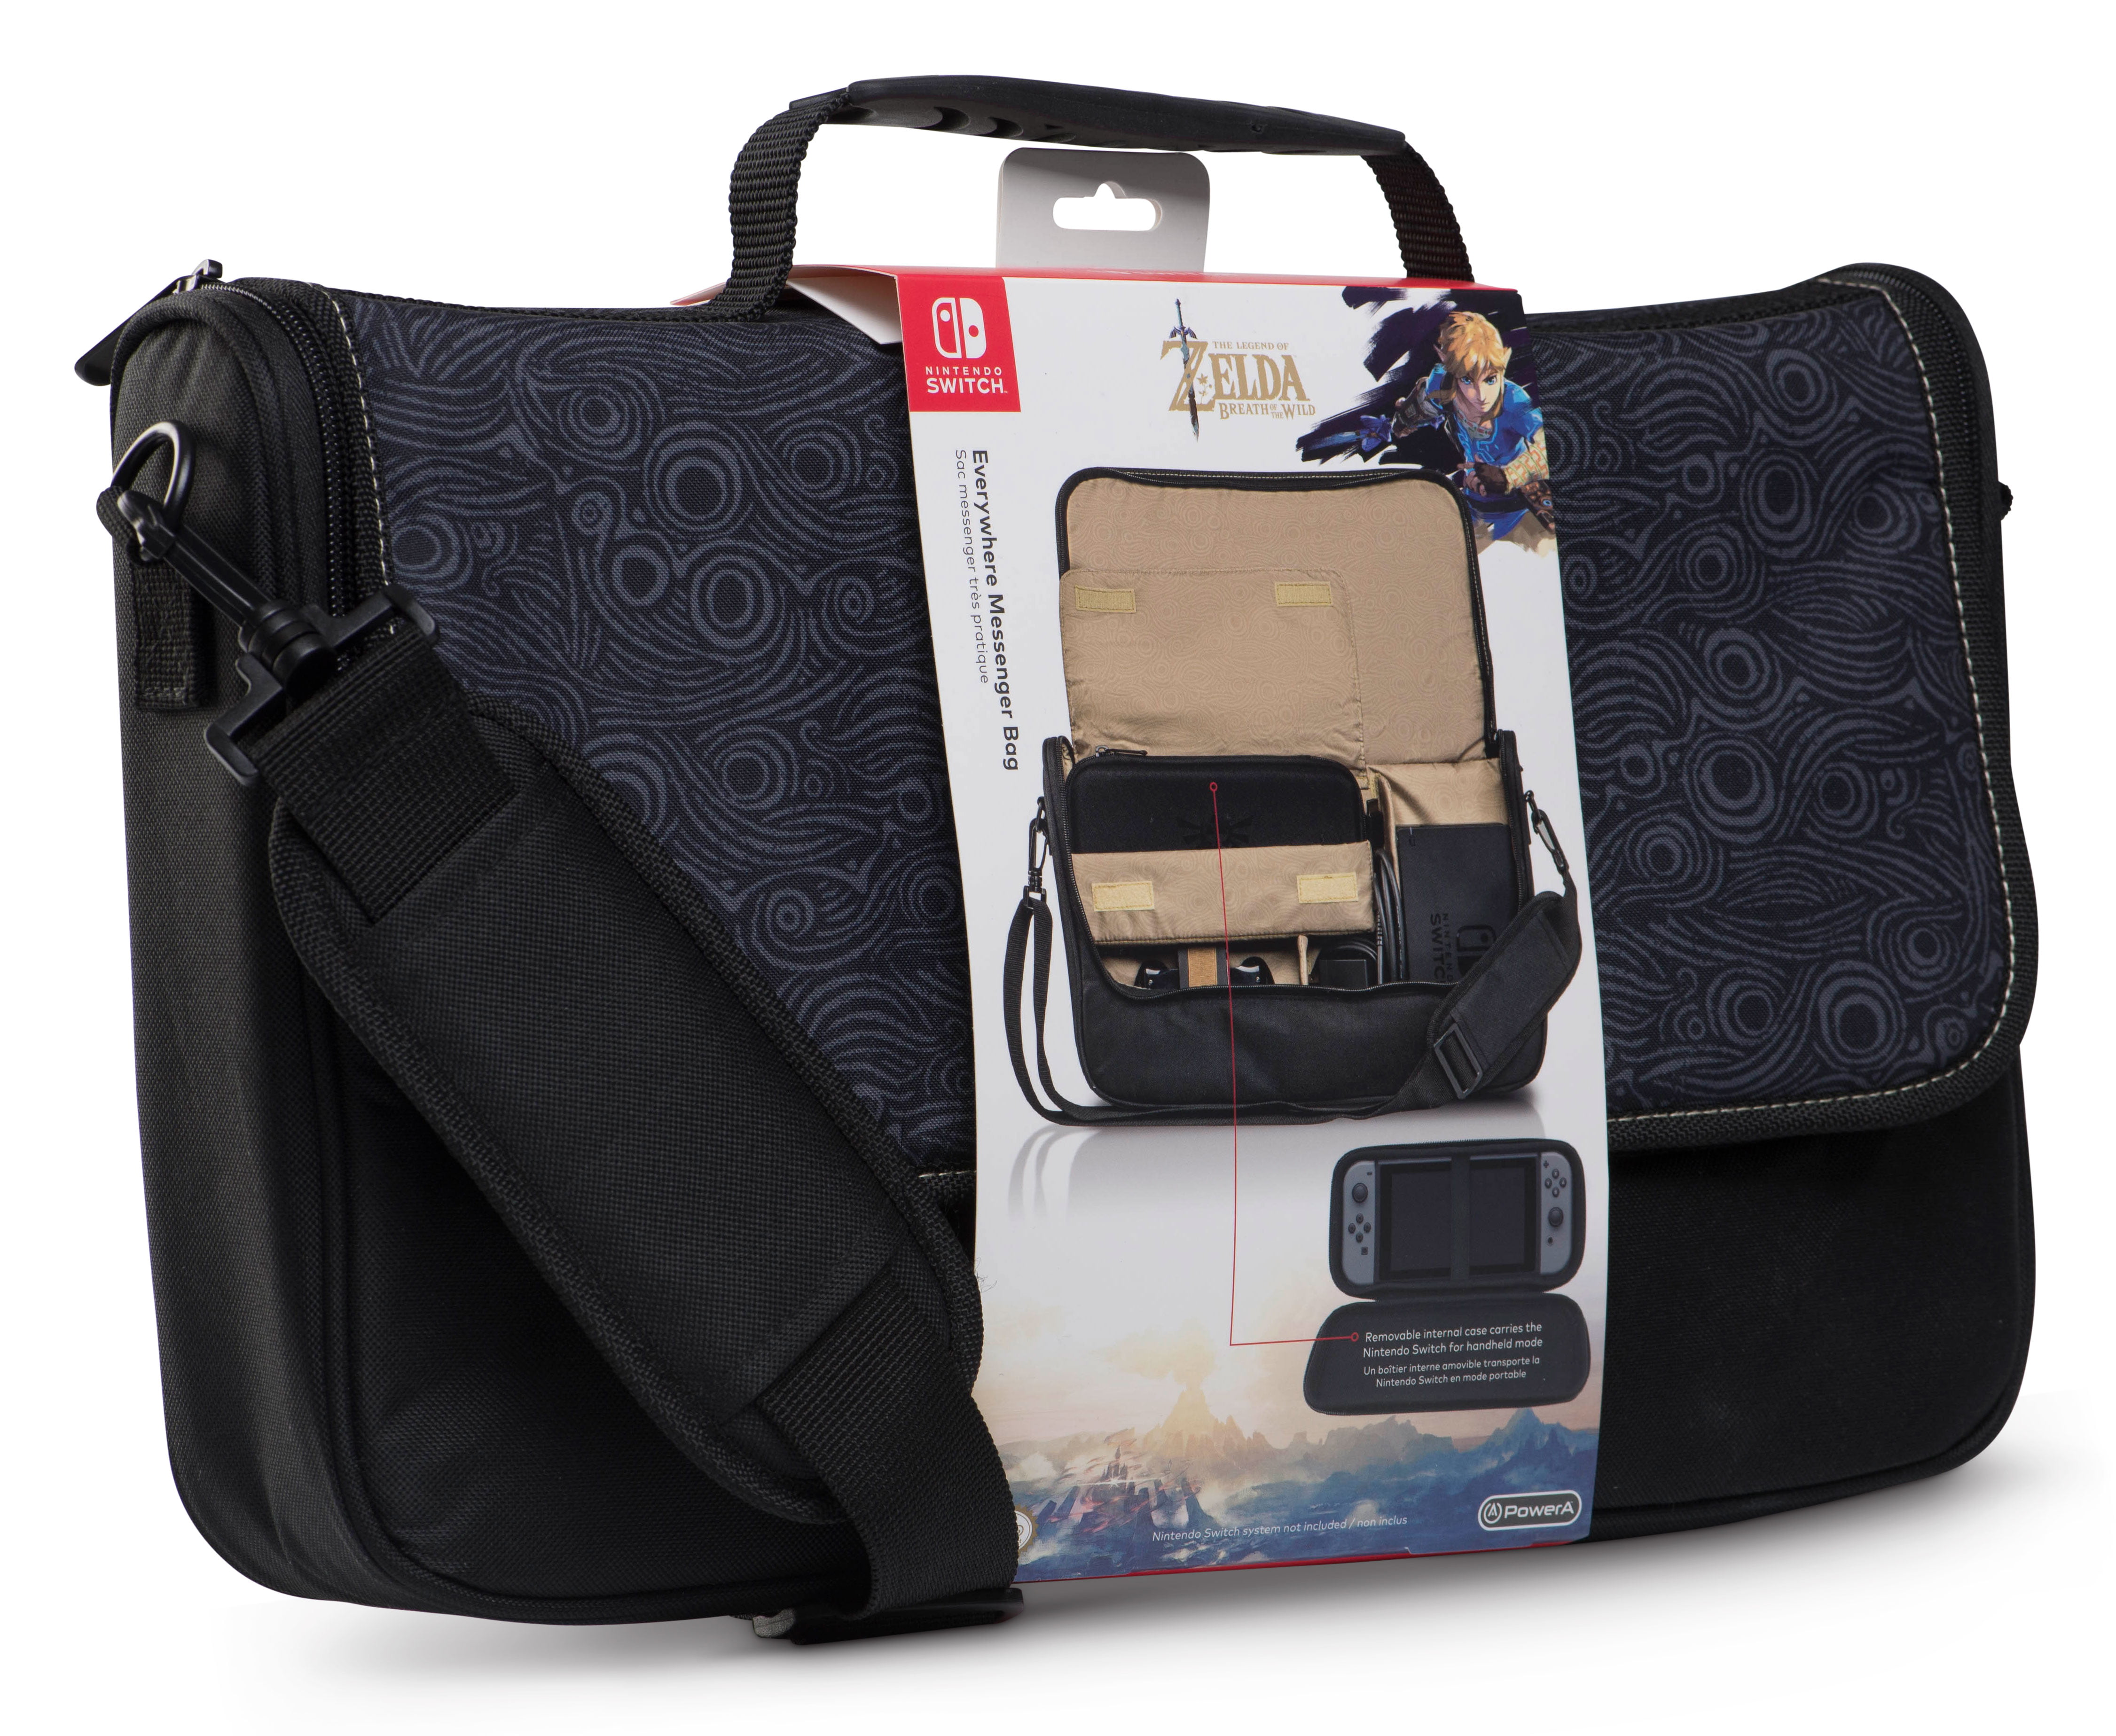 The Leg-End of Ze-L-Da Laptop Bag Briefcase Shoulder Messenger Bag Water Repellent Laptop Bag Satchel